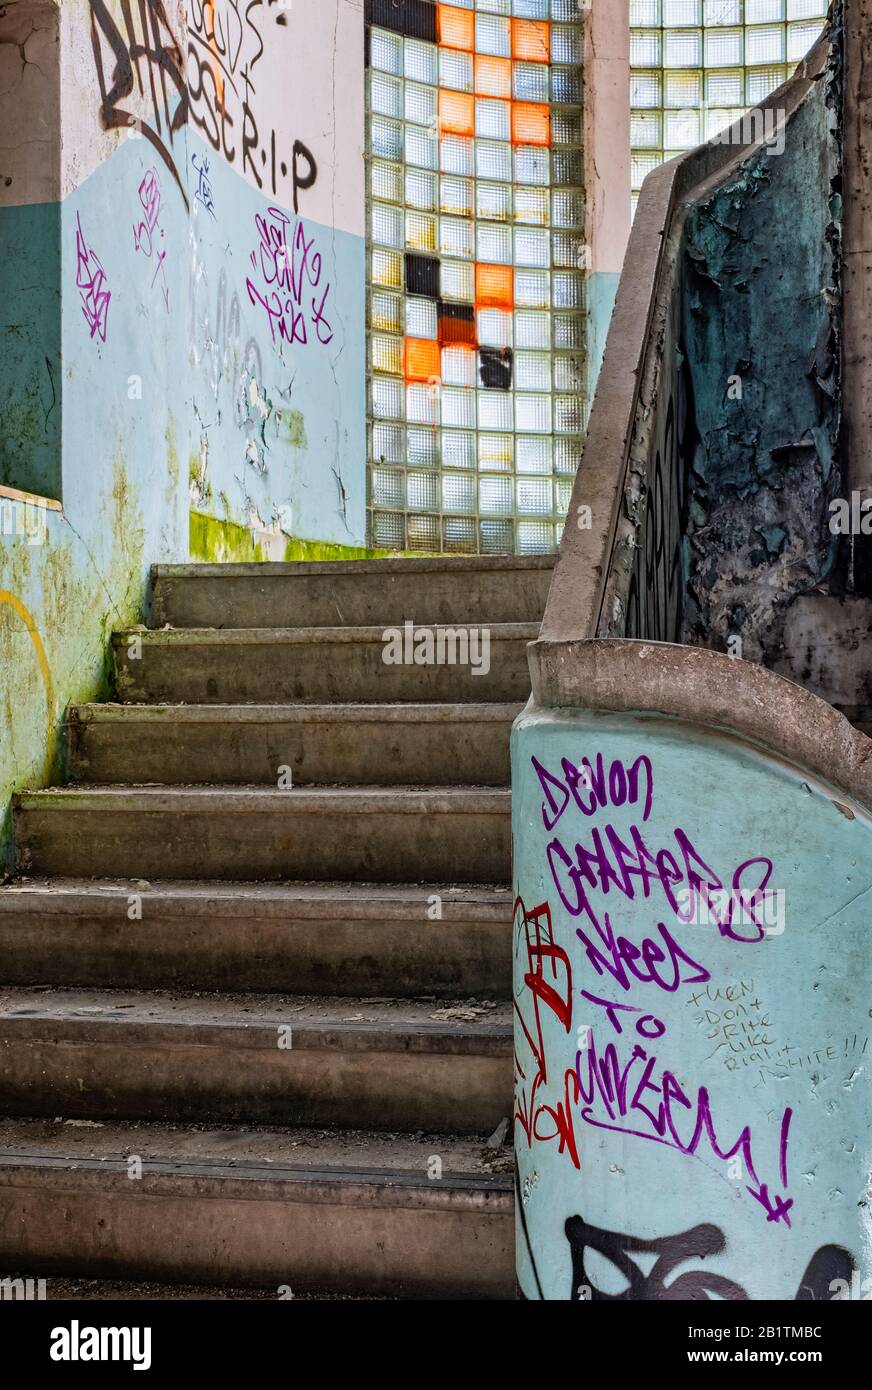 Forgottten, desolate, verfallene, verlassene städtische Fabrik, mit Spraydose Graffiti-Kunst, zertrümmerte Fenster und abblätternde Farbe, für immer vergessen. Stockfoto